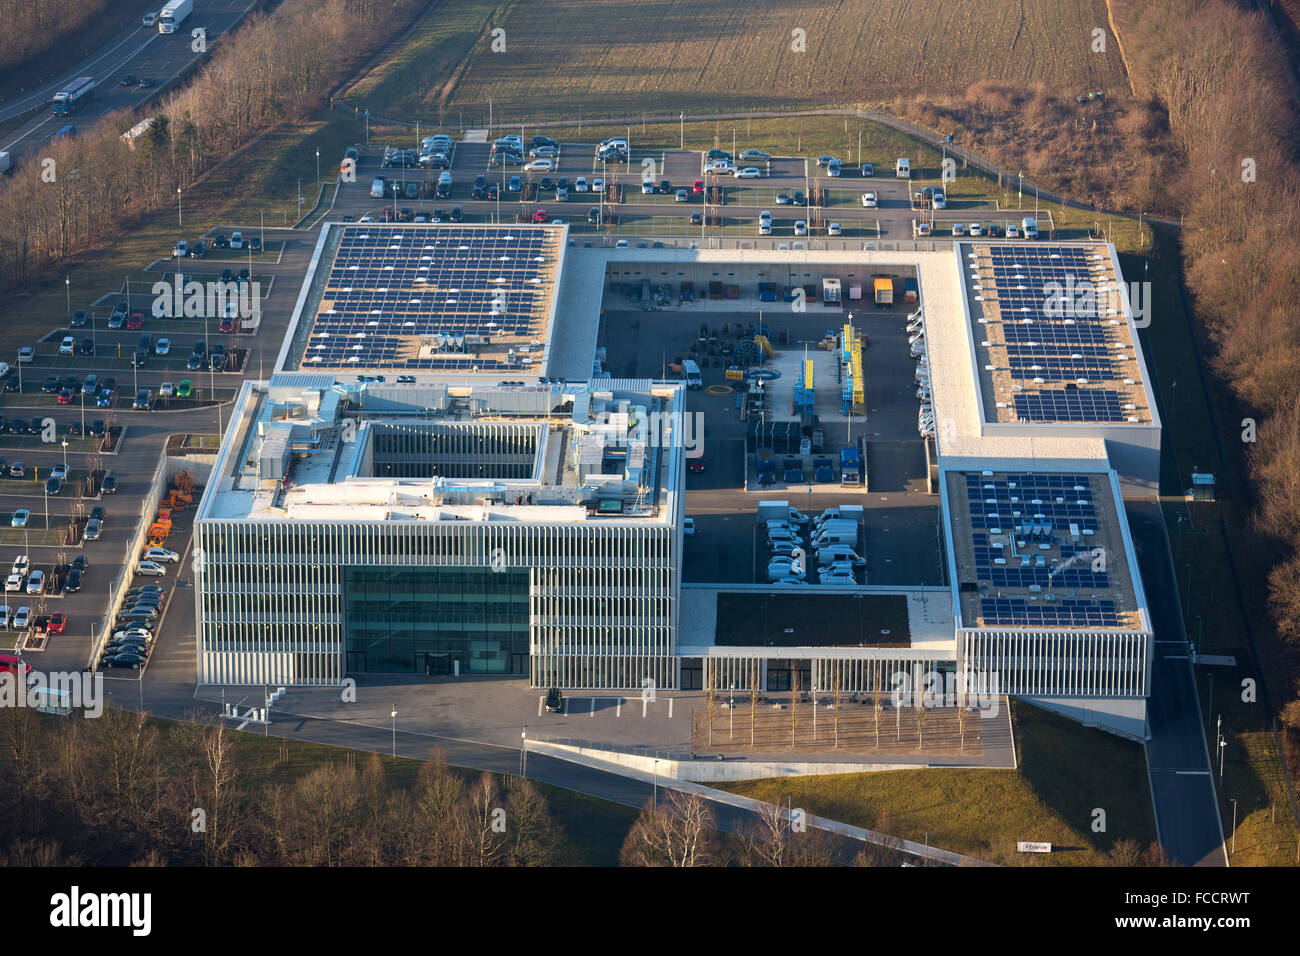 Vista aerea, comunali i fornitori di energia, sede Enervie Hassley, Hagen, zona della Ruhr, Renania settentrionale-Vestfalia, Germania, Europa Foto Stock